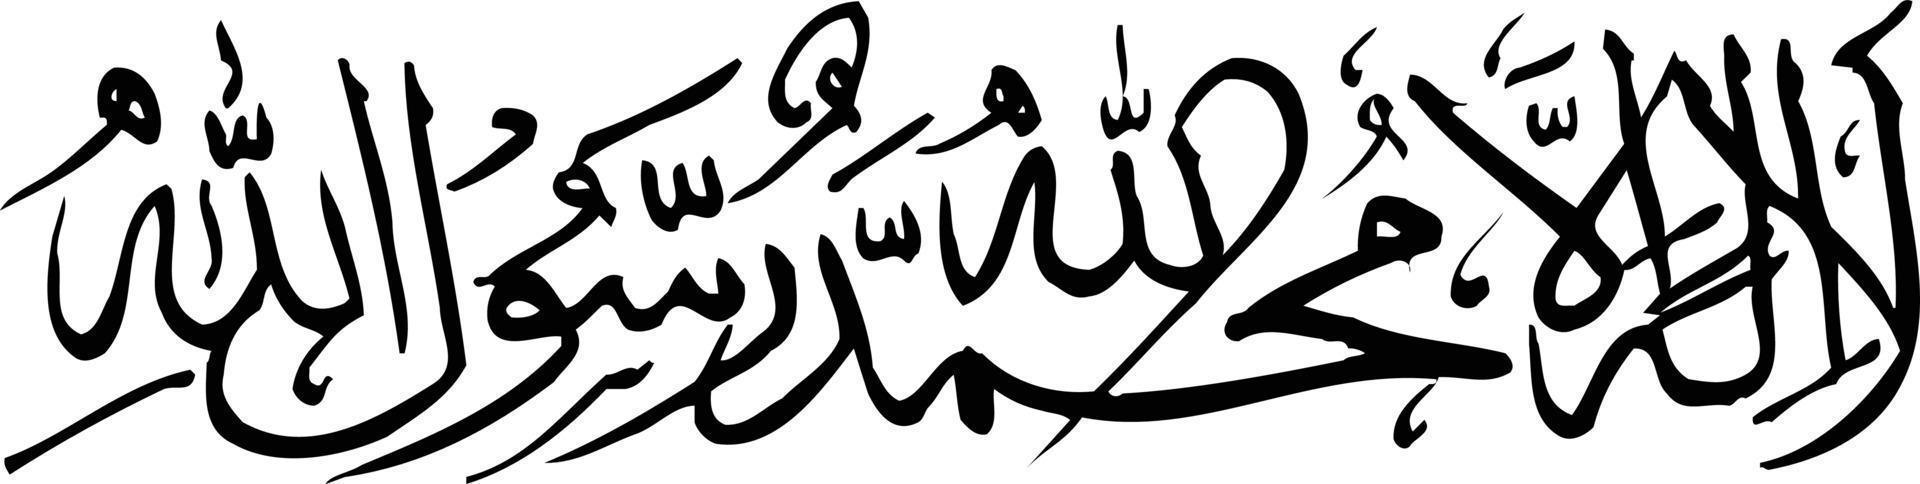 kalma islamische arabische kalligraphie kostenloser vektor